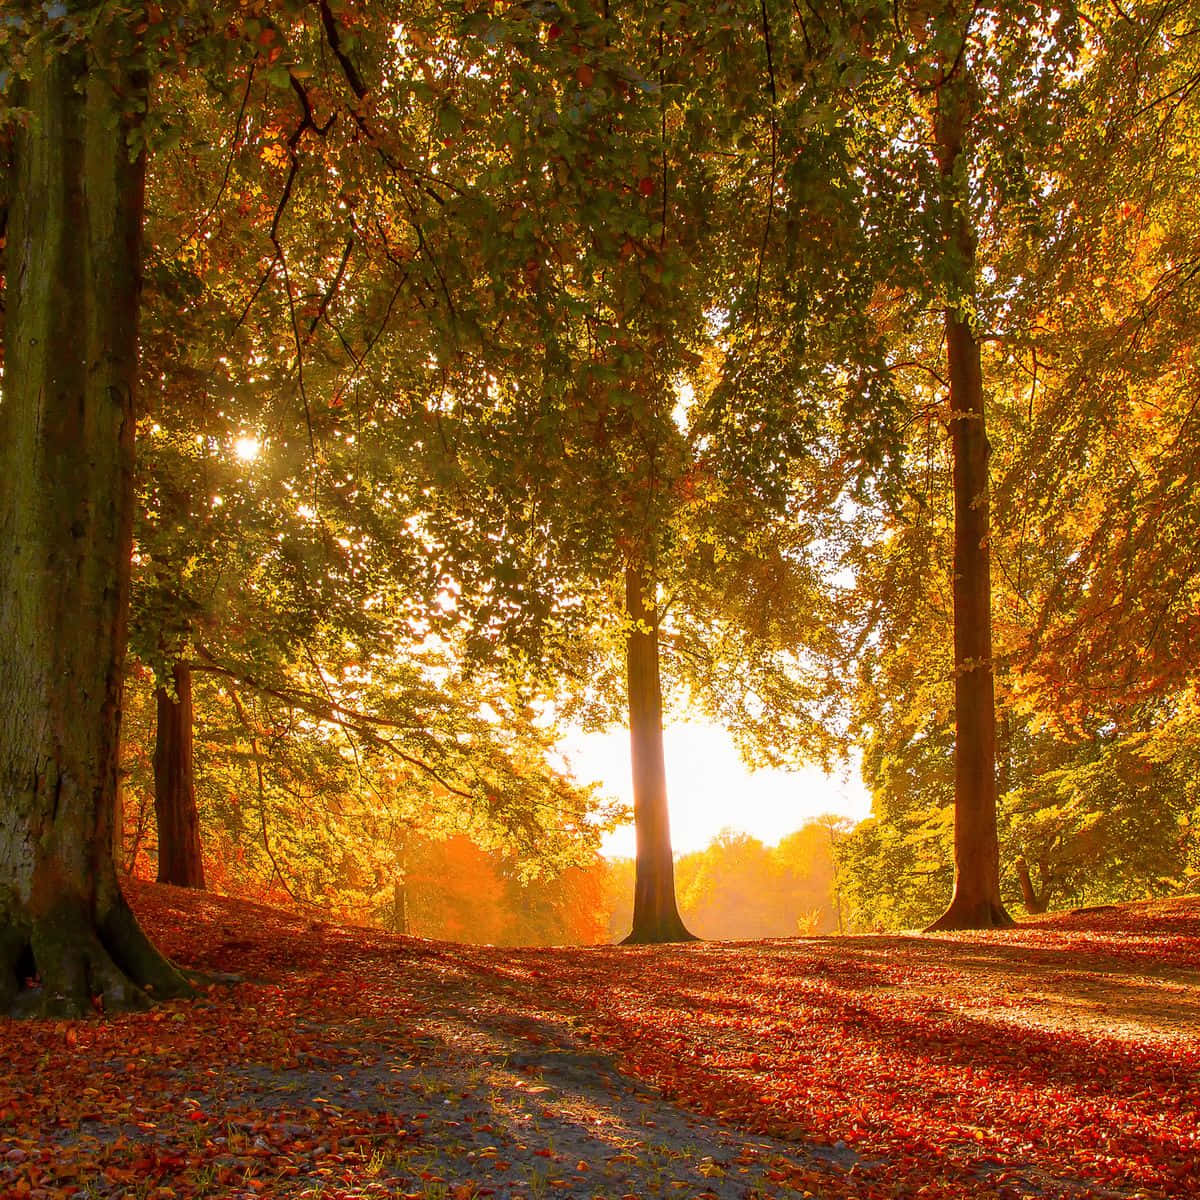 Goditila Bellezza Dell'autunno Con I Suoi Colori Vivaci!